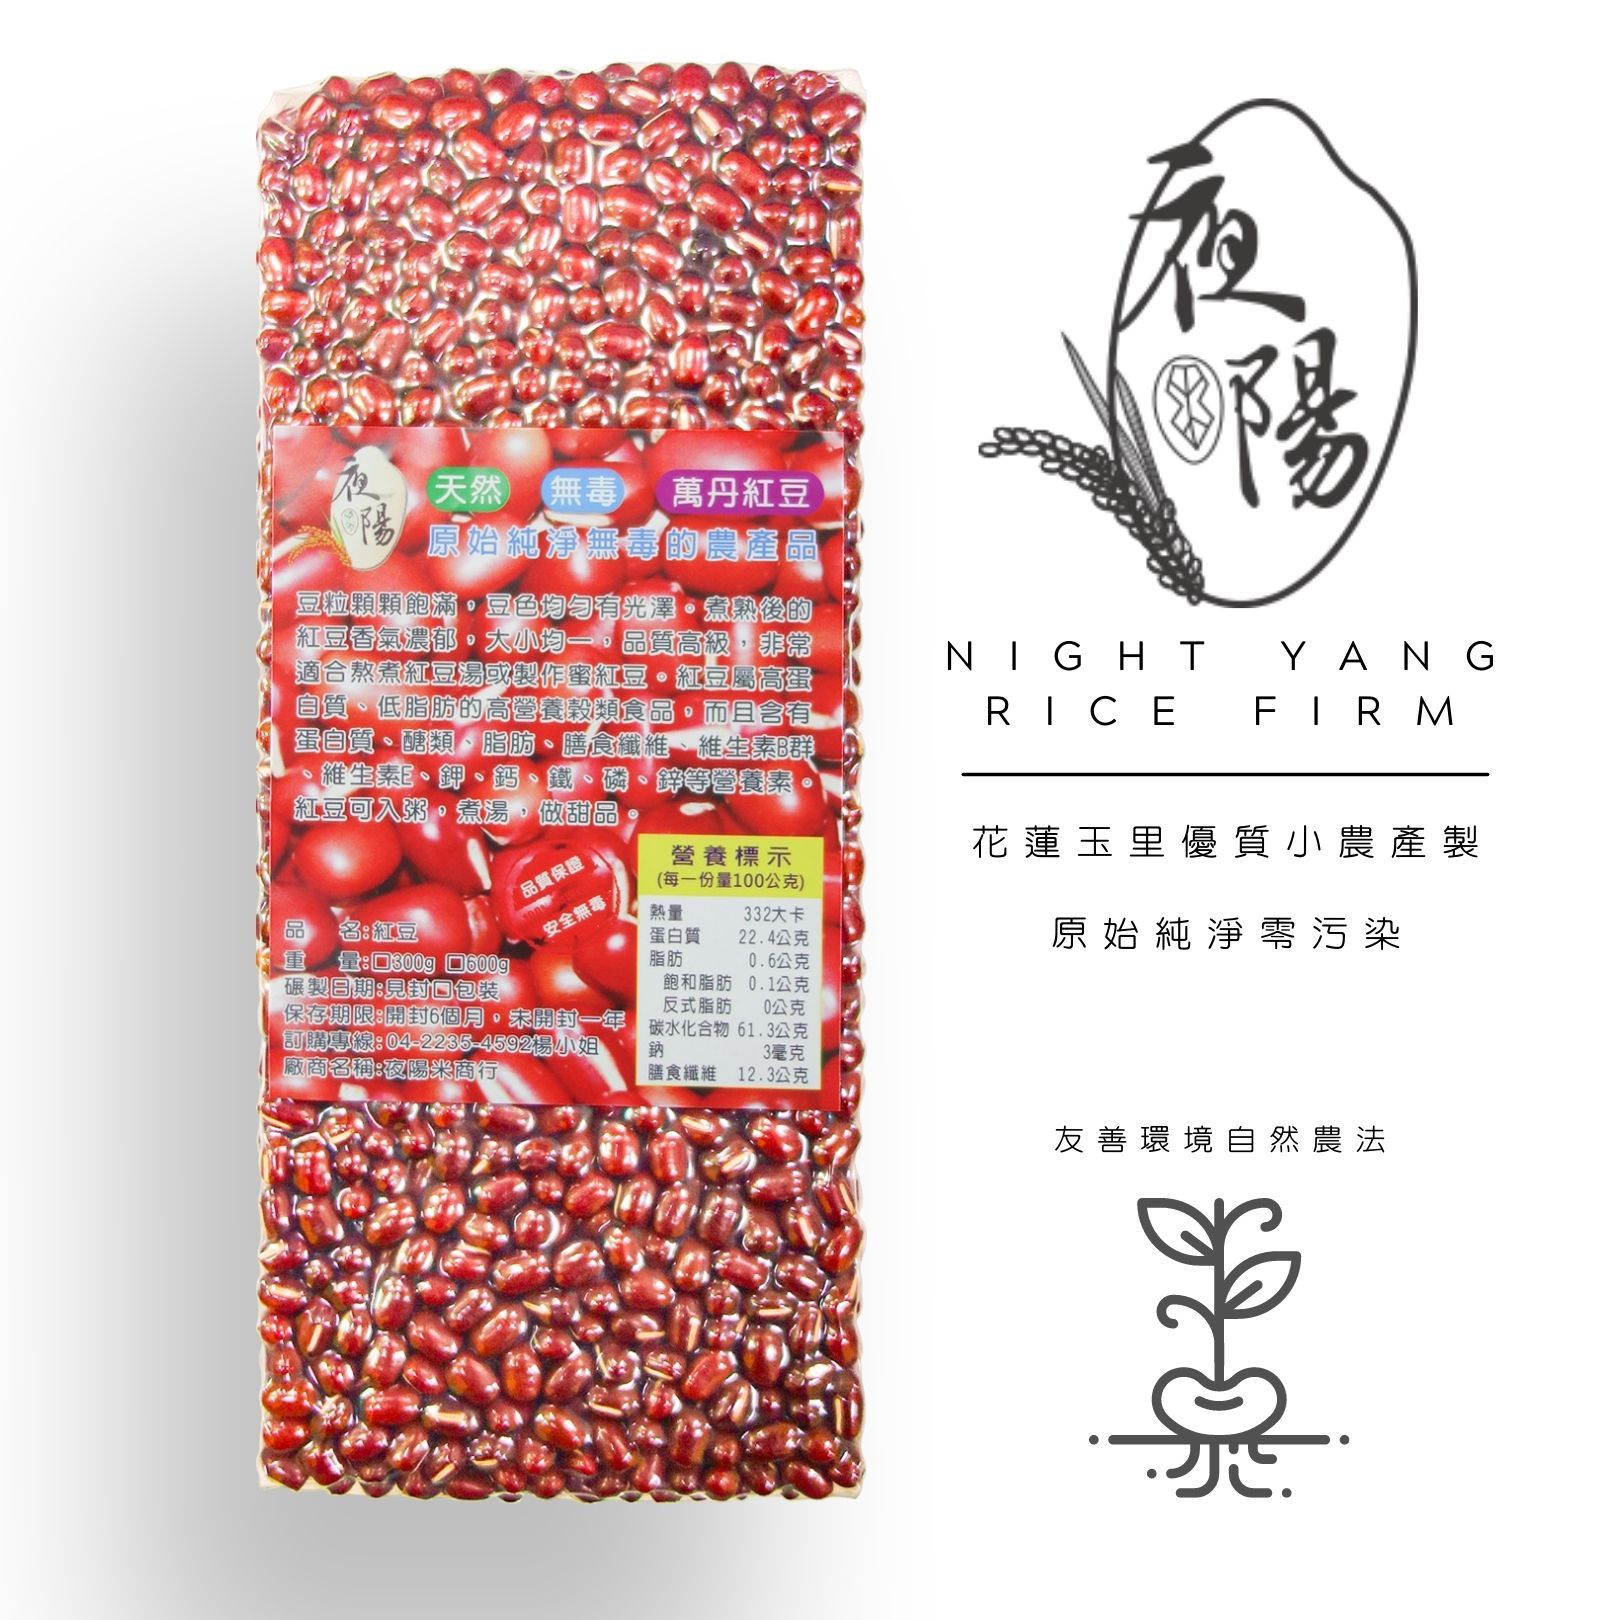 【夜陽米商行】萬丹蜜紅豆600公克